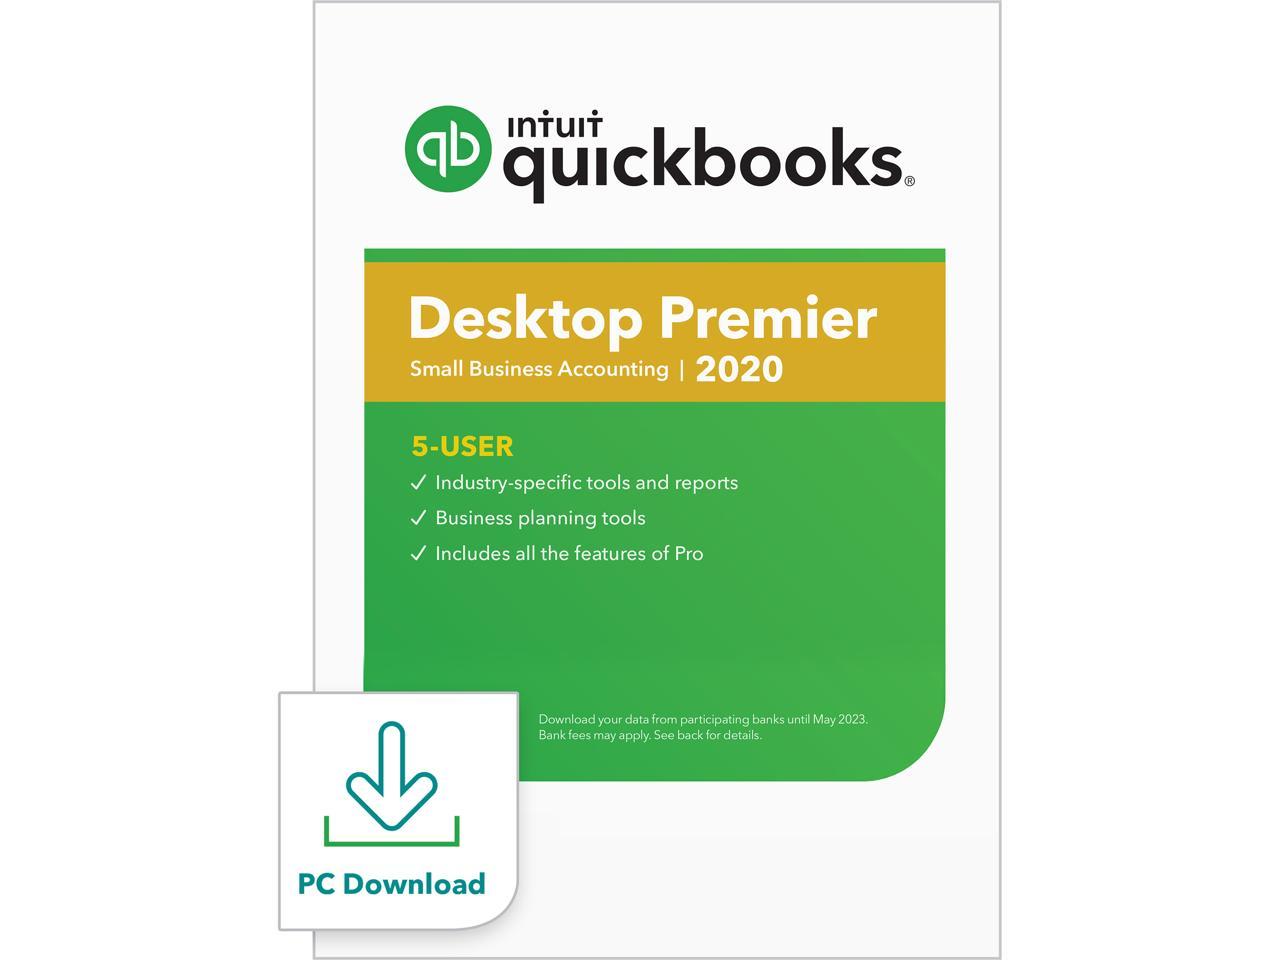 1 intuit quickbooks pro download 2 2017